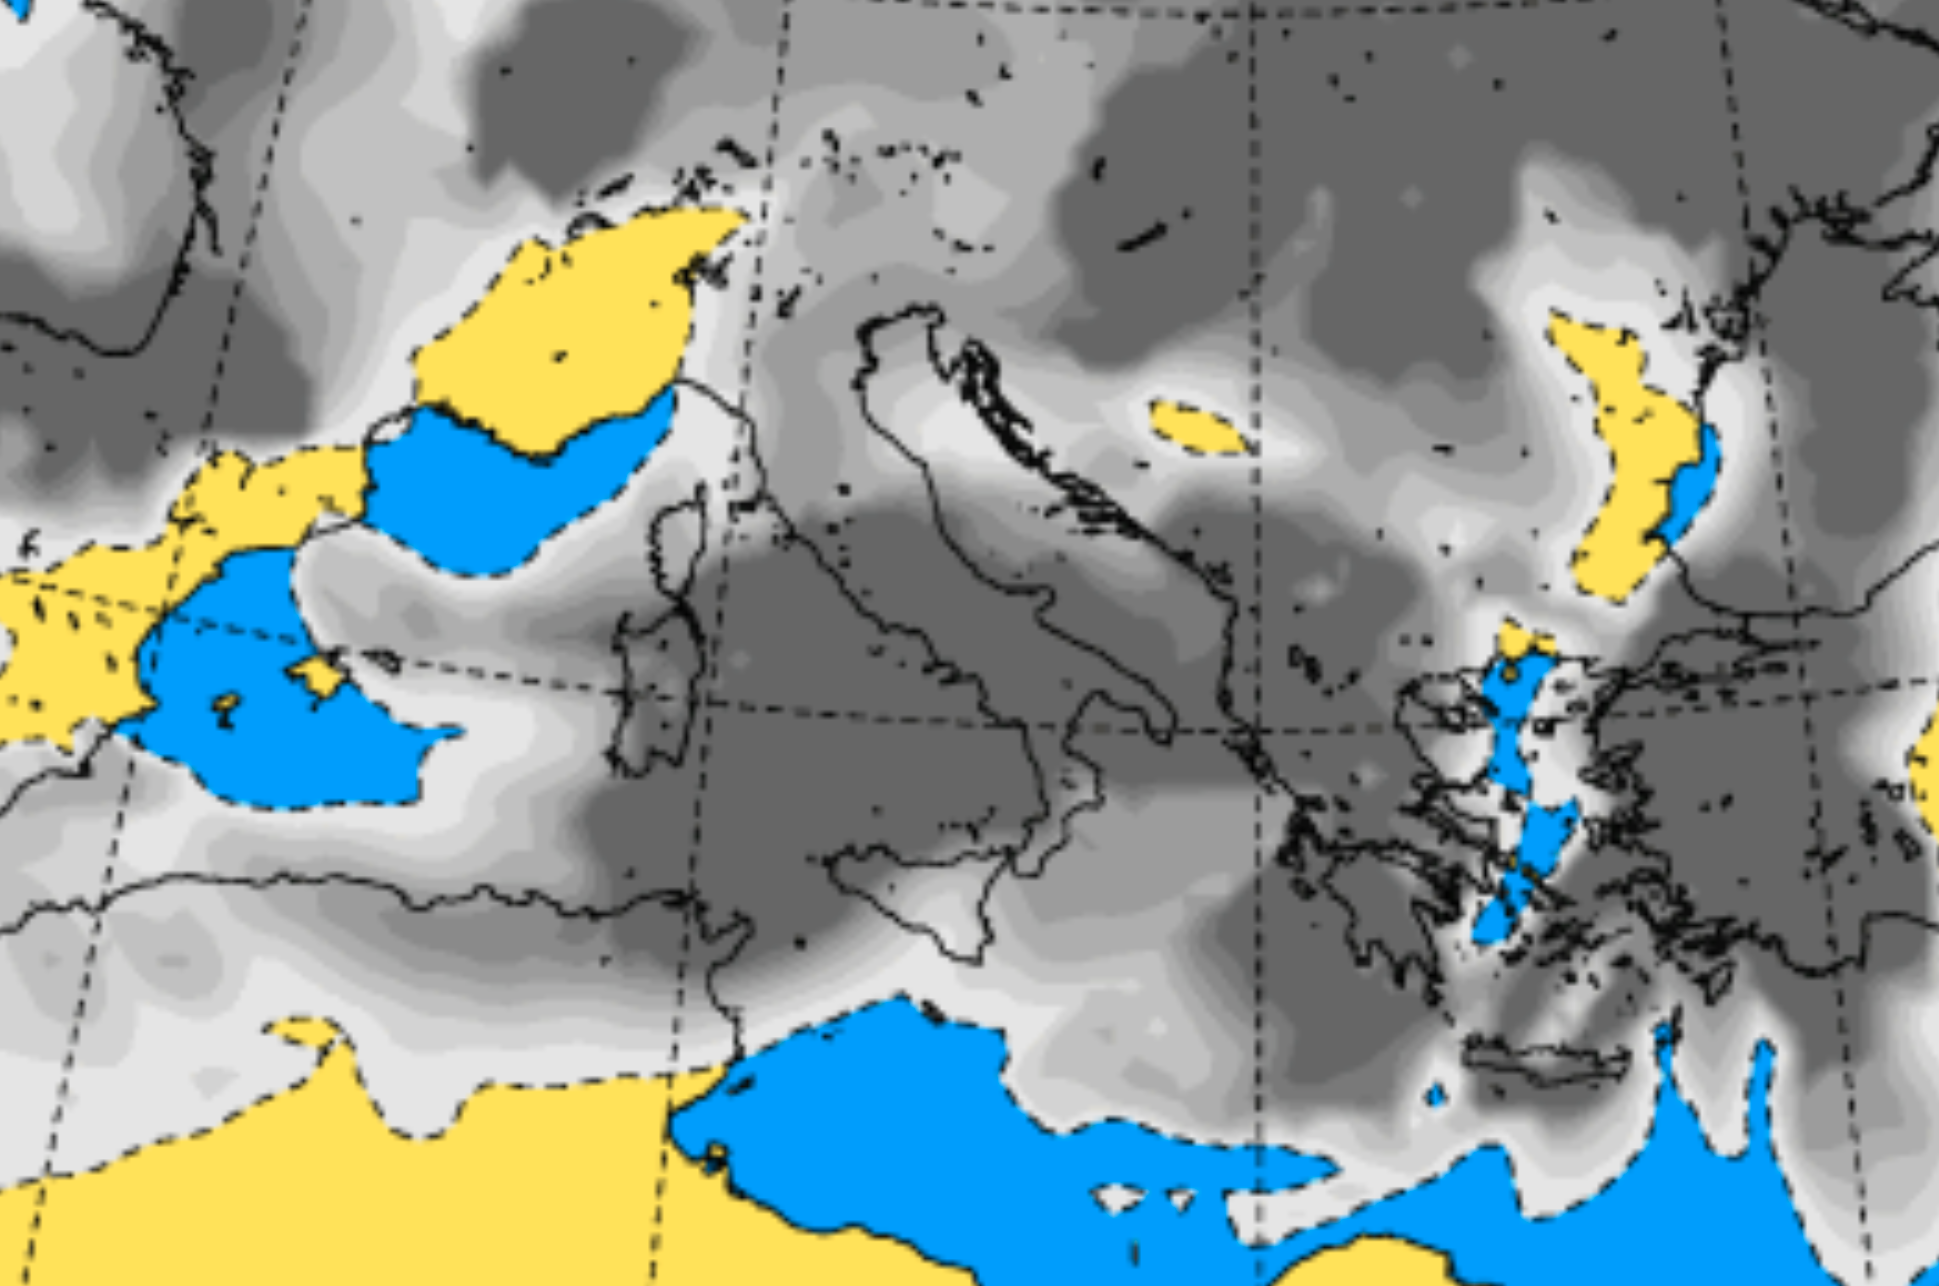 Peggioramento meteo in Sicilia: weekend tra temporali, venti forti e mari agitati. Le previsioni per oggi e domani